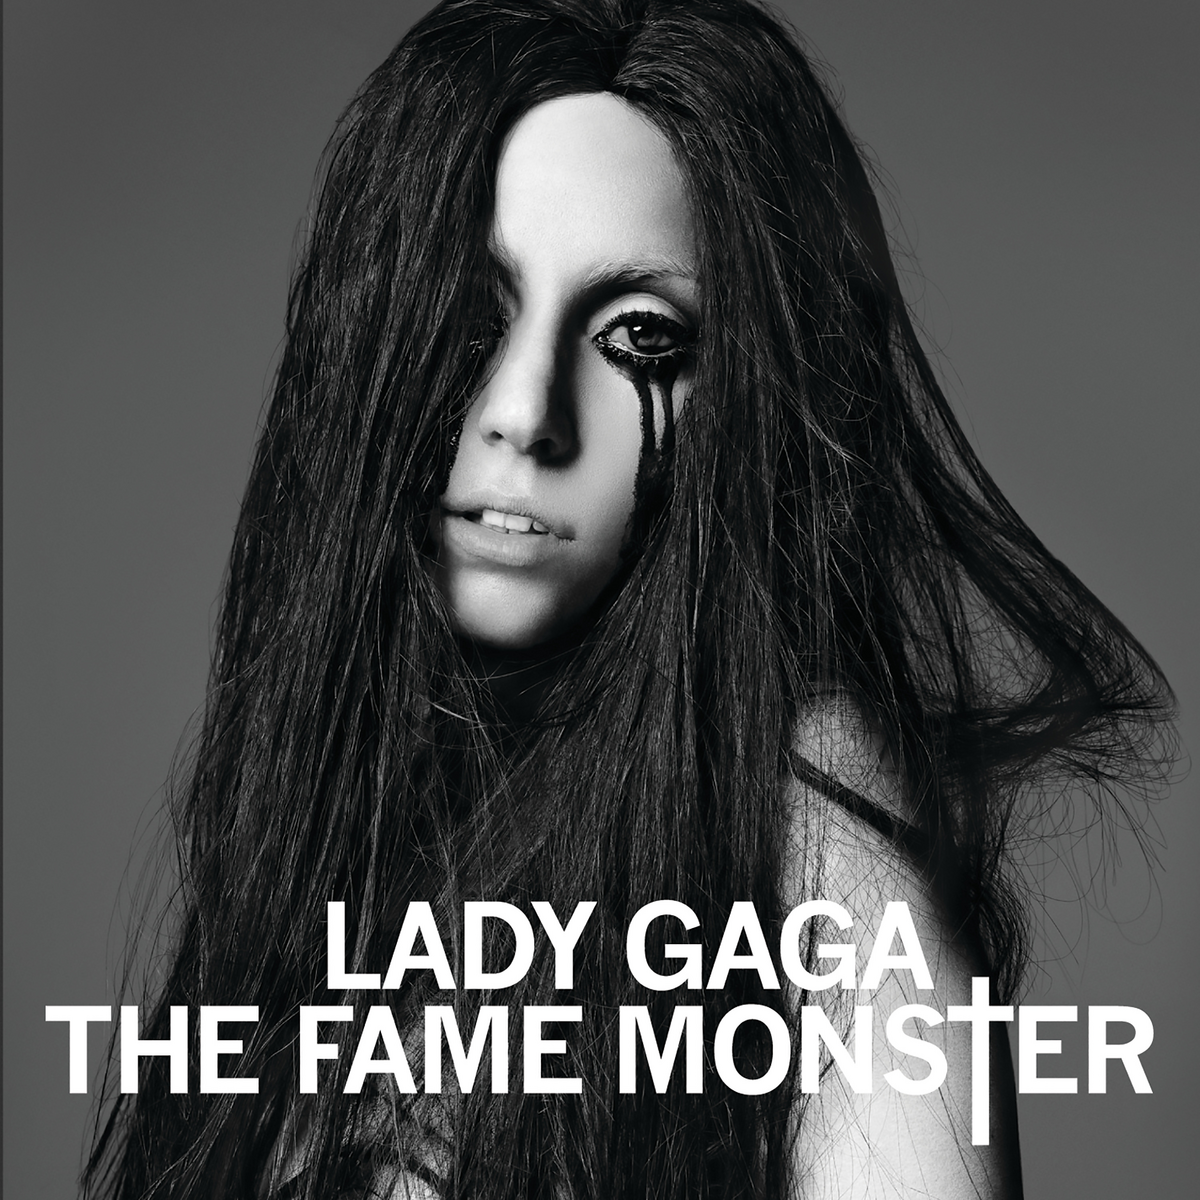 Lady Gaga – Wikipedia